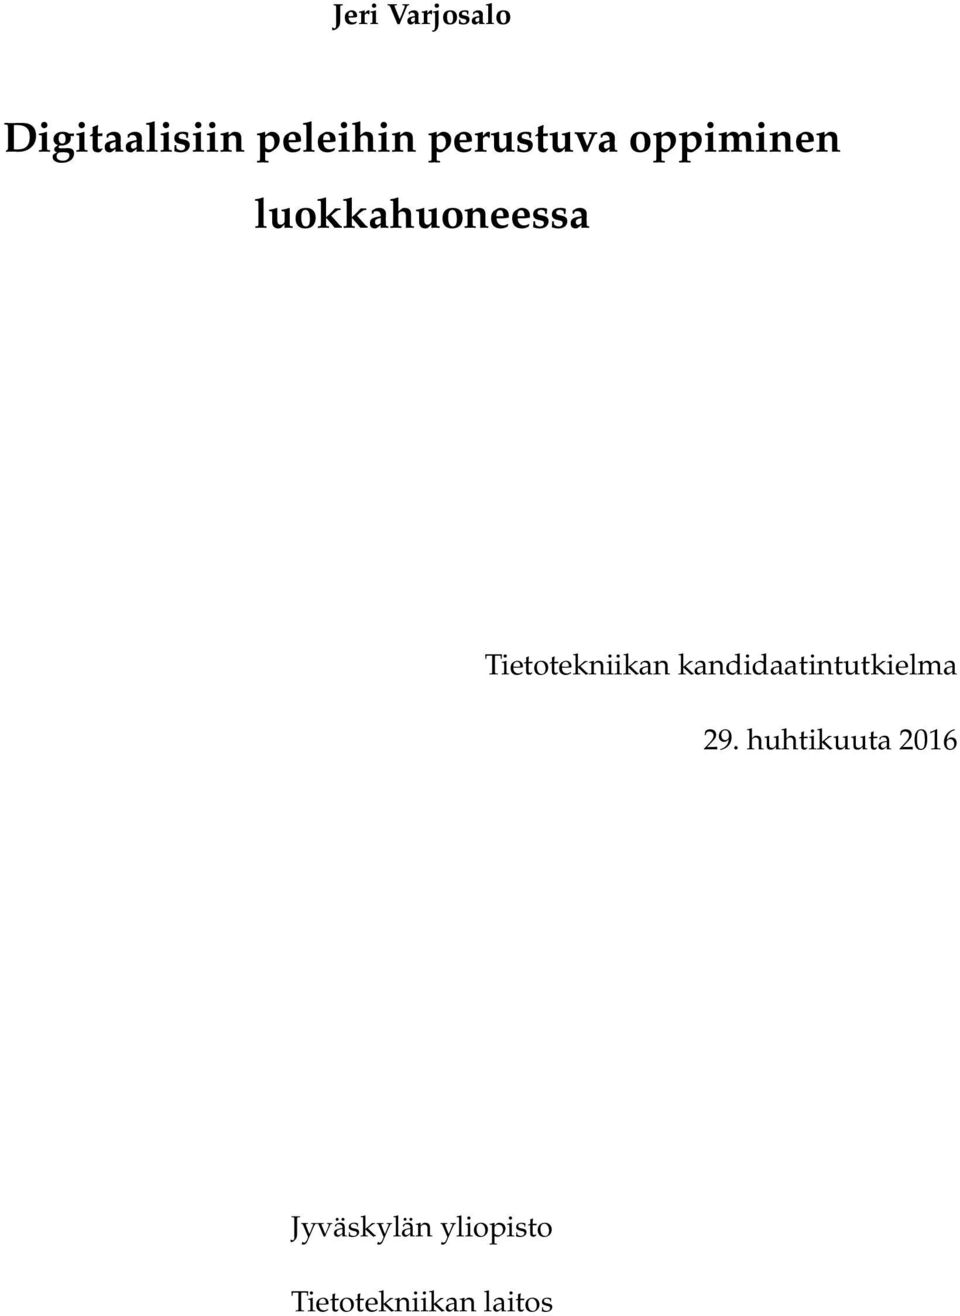 Tietotekniikan kandidaatintutkielma 29.